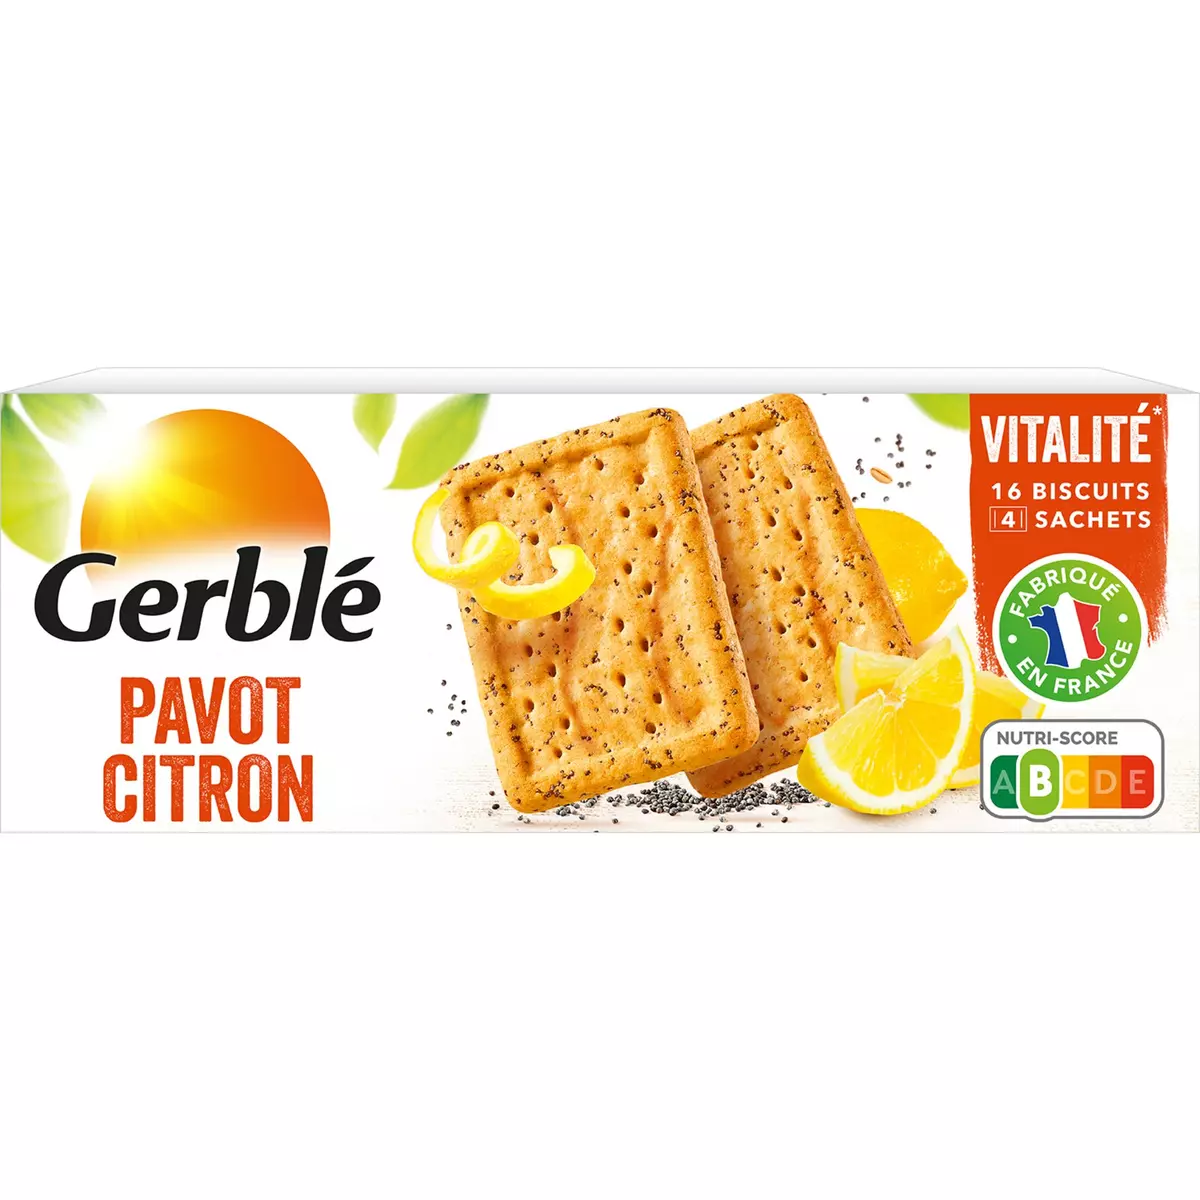 Promo Gerblé Vitalité 16 Biscuits Pavot Citron -46% de sucres en moins